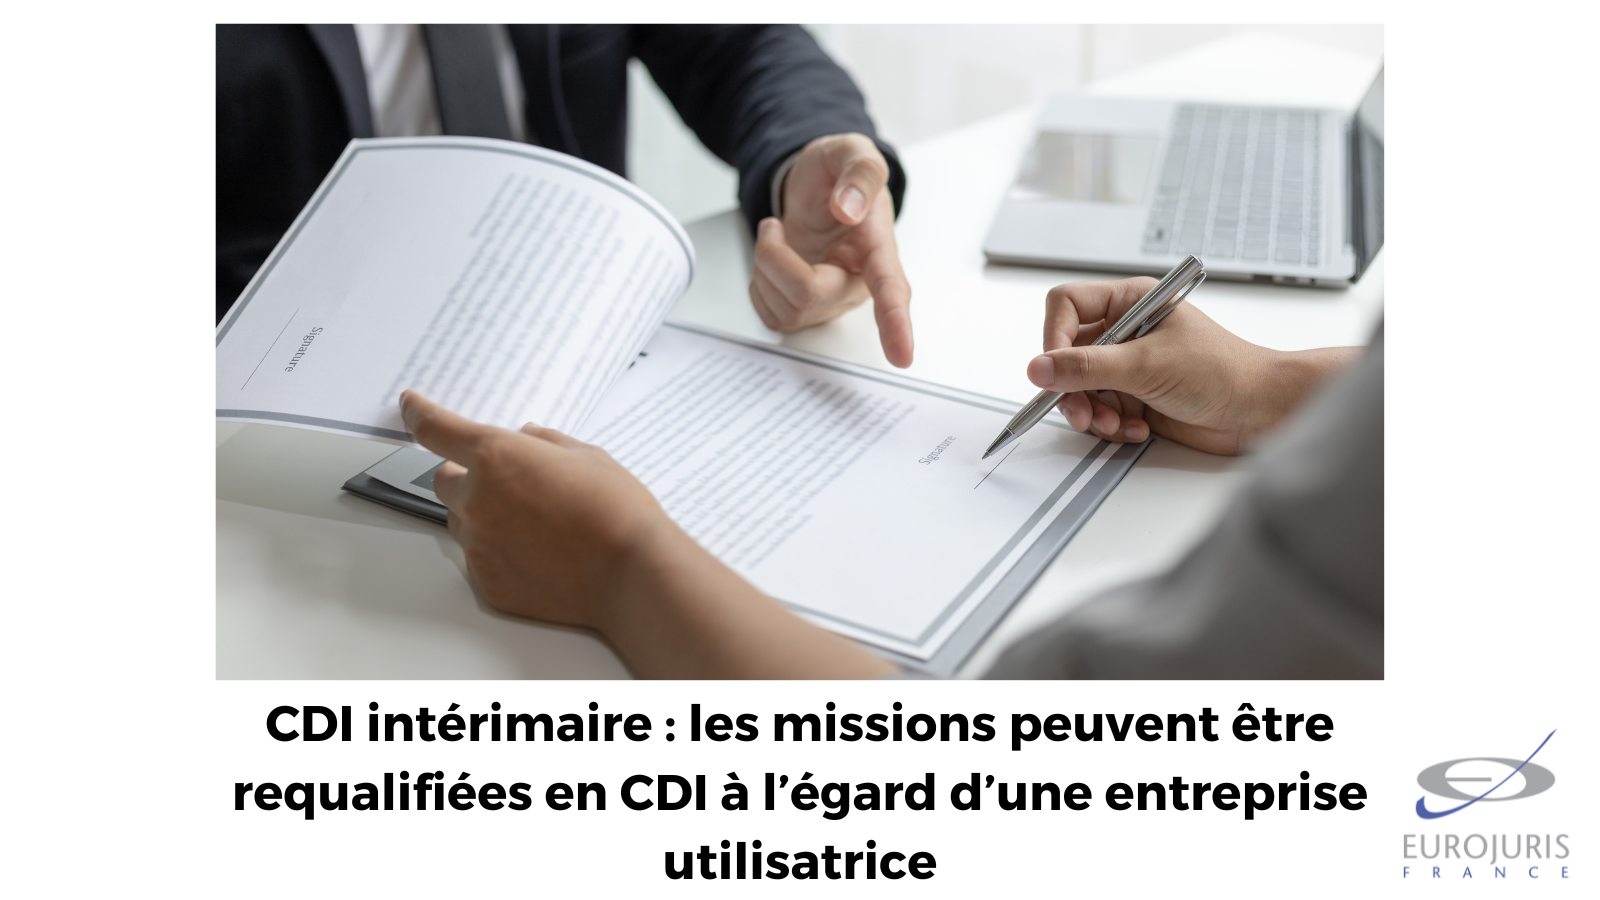 CDI intérimaire : les missions peuvent être requalifiées en CDI à l’égard d’une entreprise utilisatrice